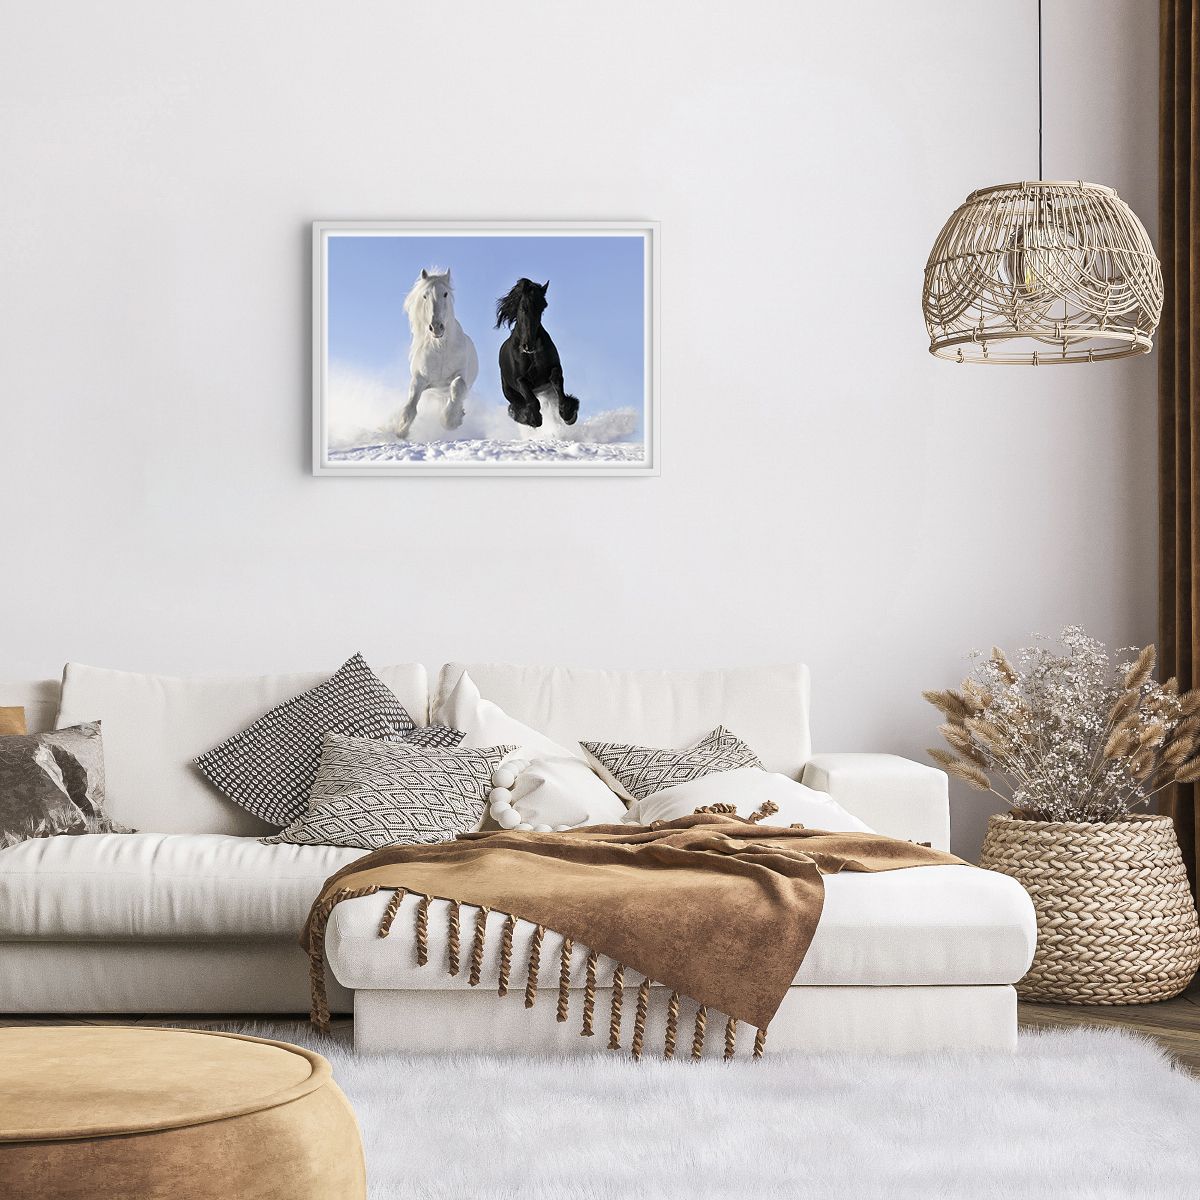 Poster in einem weißen Rahmen Tiere, Poster in einem weißen Rahmen Pferd, Poster in einem weißen Rahmen Winter, Poster in einem weißen Rahmen Natur, Poster in einem weißen Rahmen Galopp